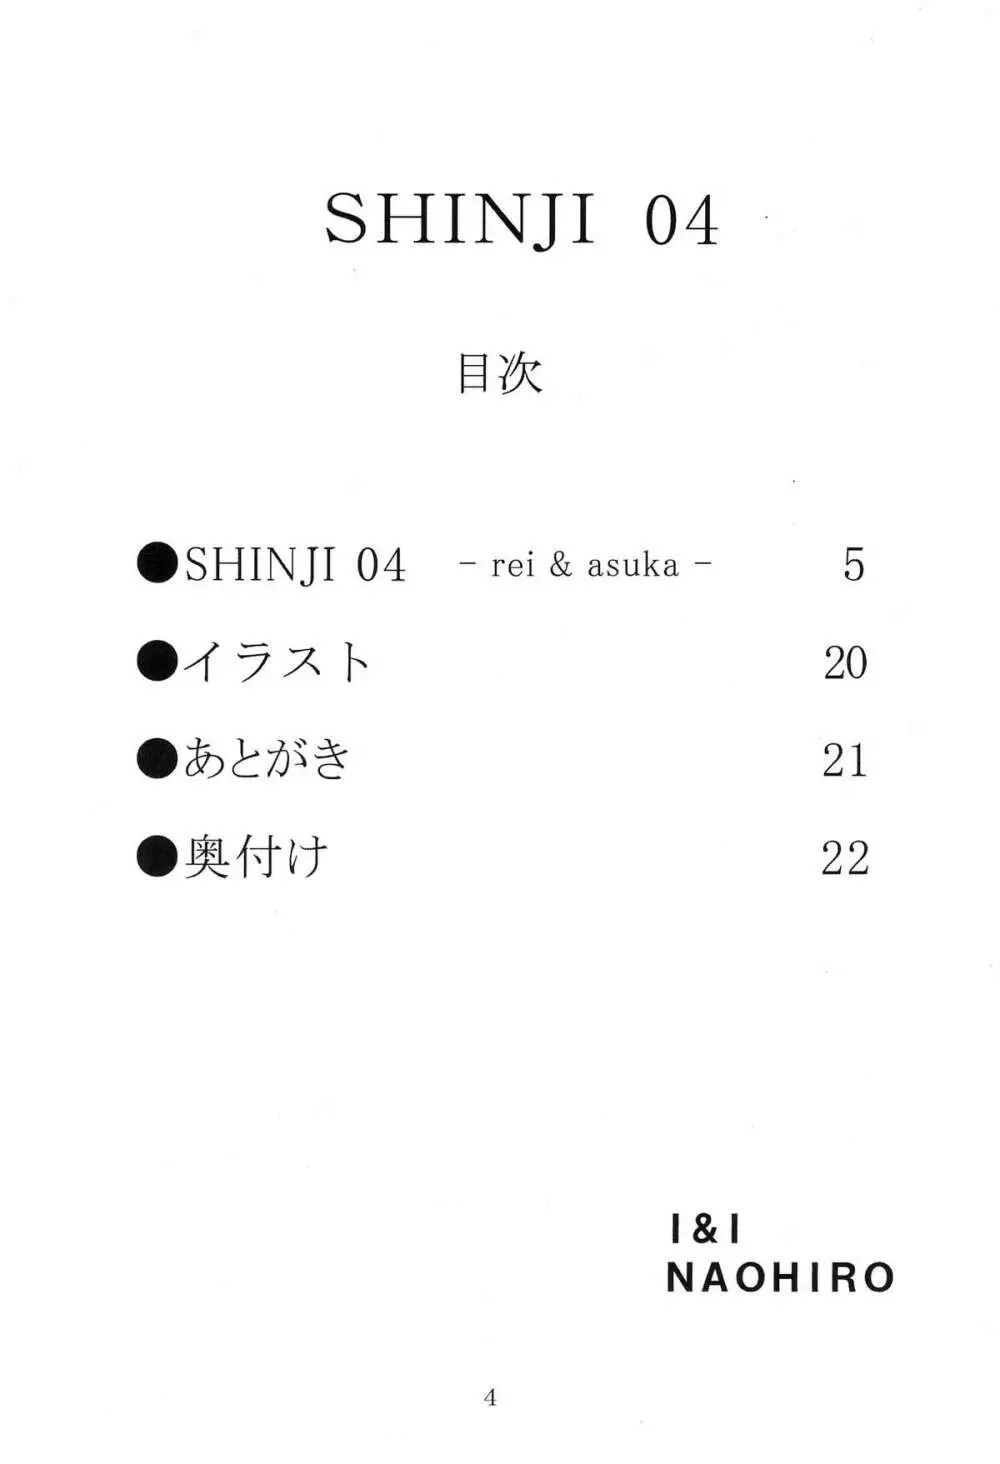 SHINJI 04 - rei & askua - page5